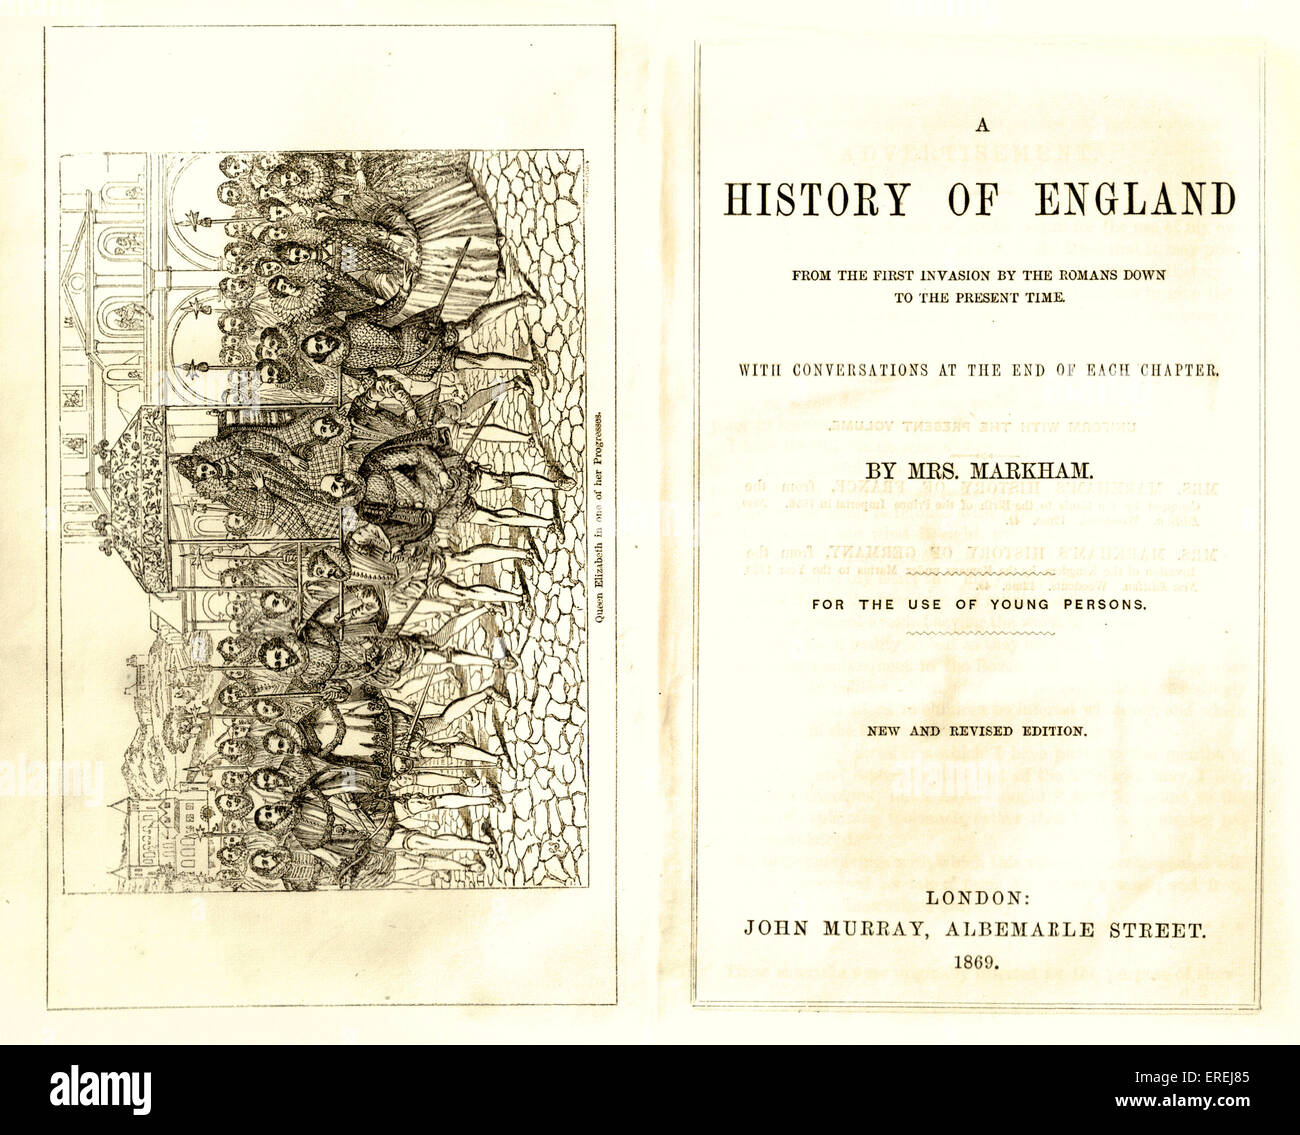 Pagina del titolo e frontespizio di " una storia di Inghilterra', dalla onorevole Markham, "per l'uso dei giovani". Nuovo & edizione riveduta, Foto Stock